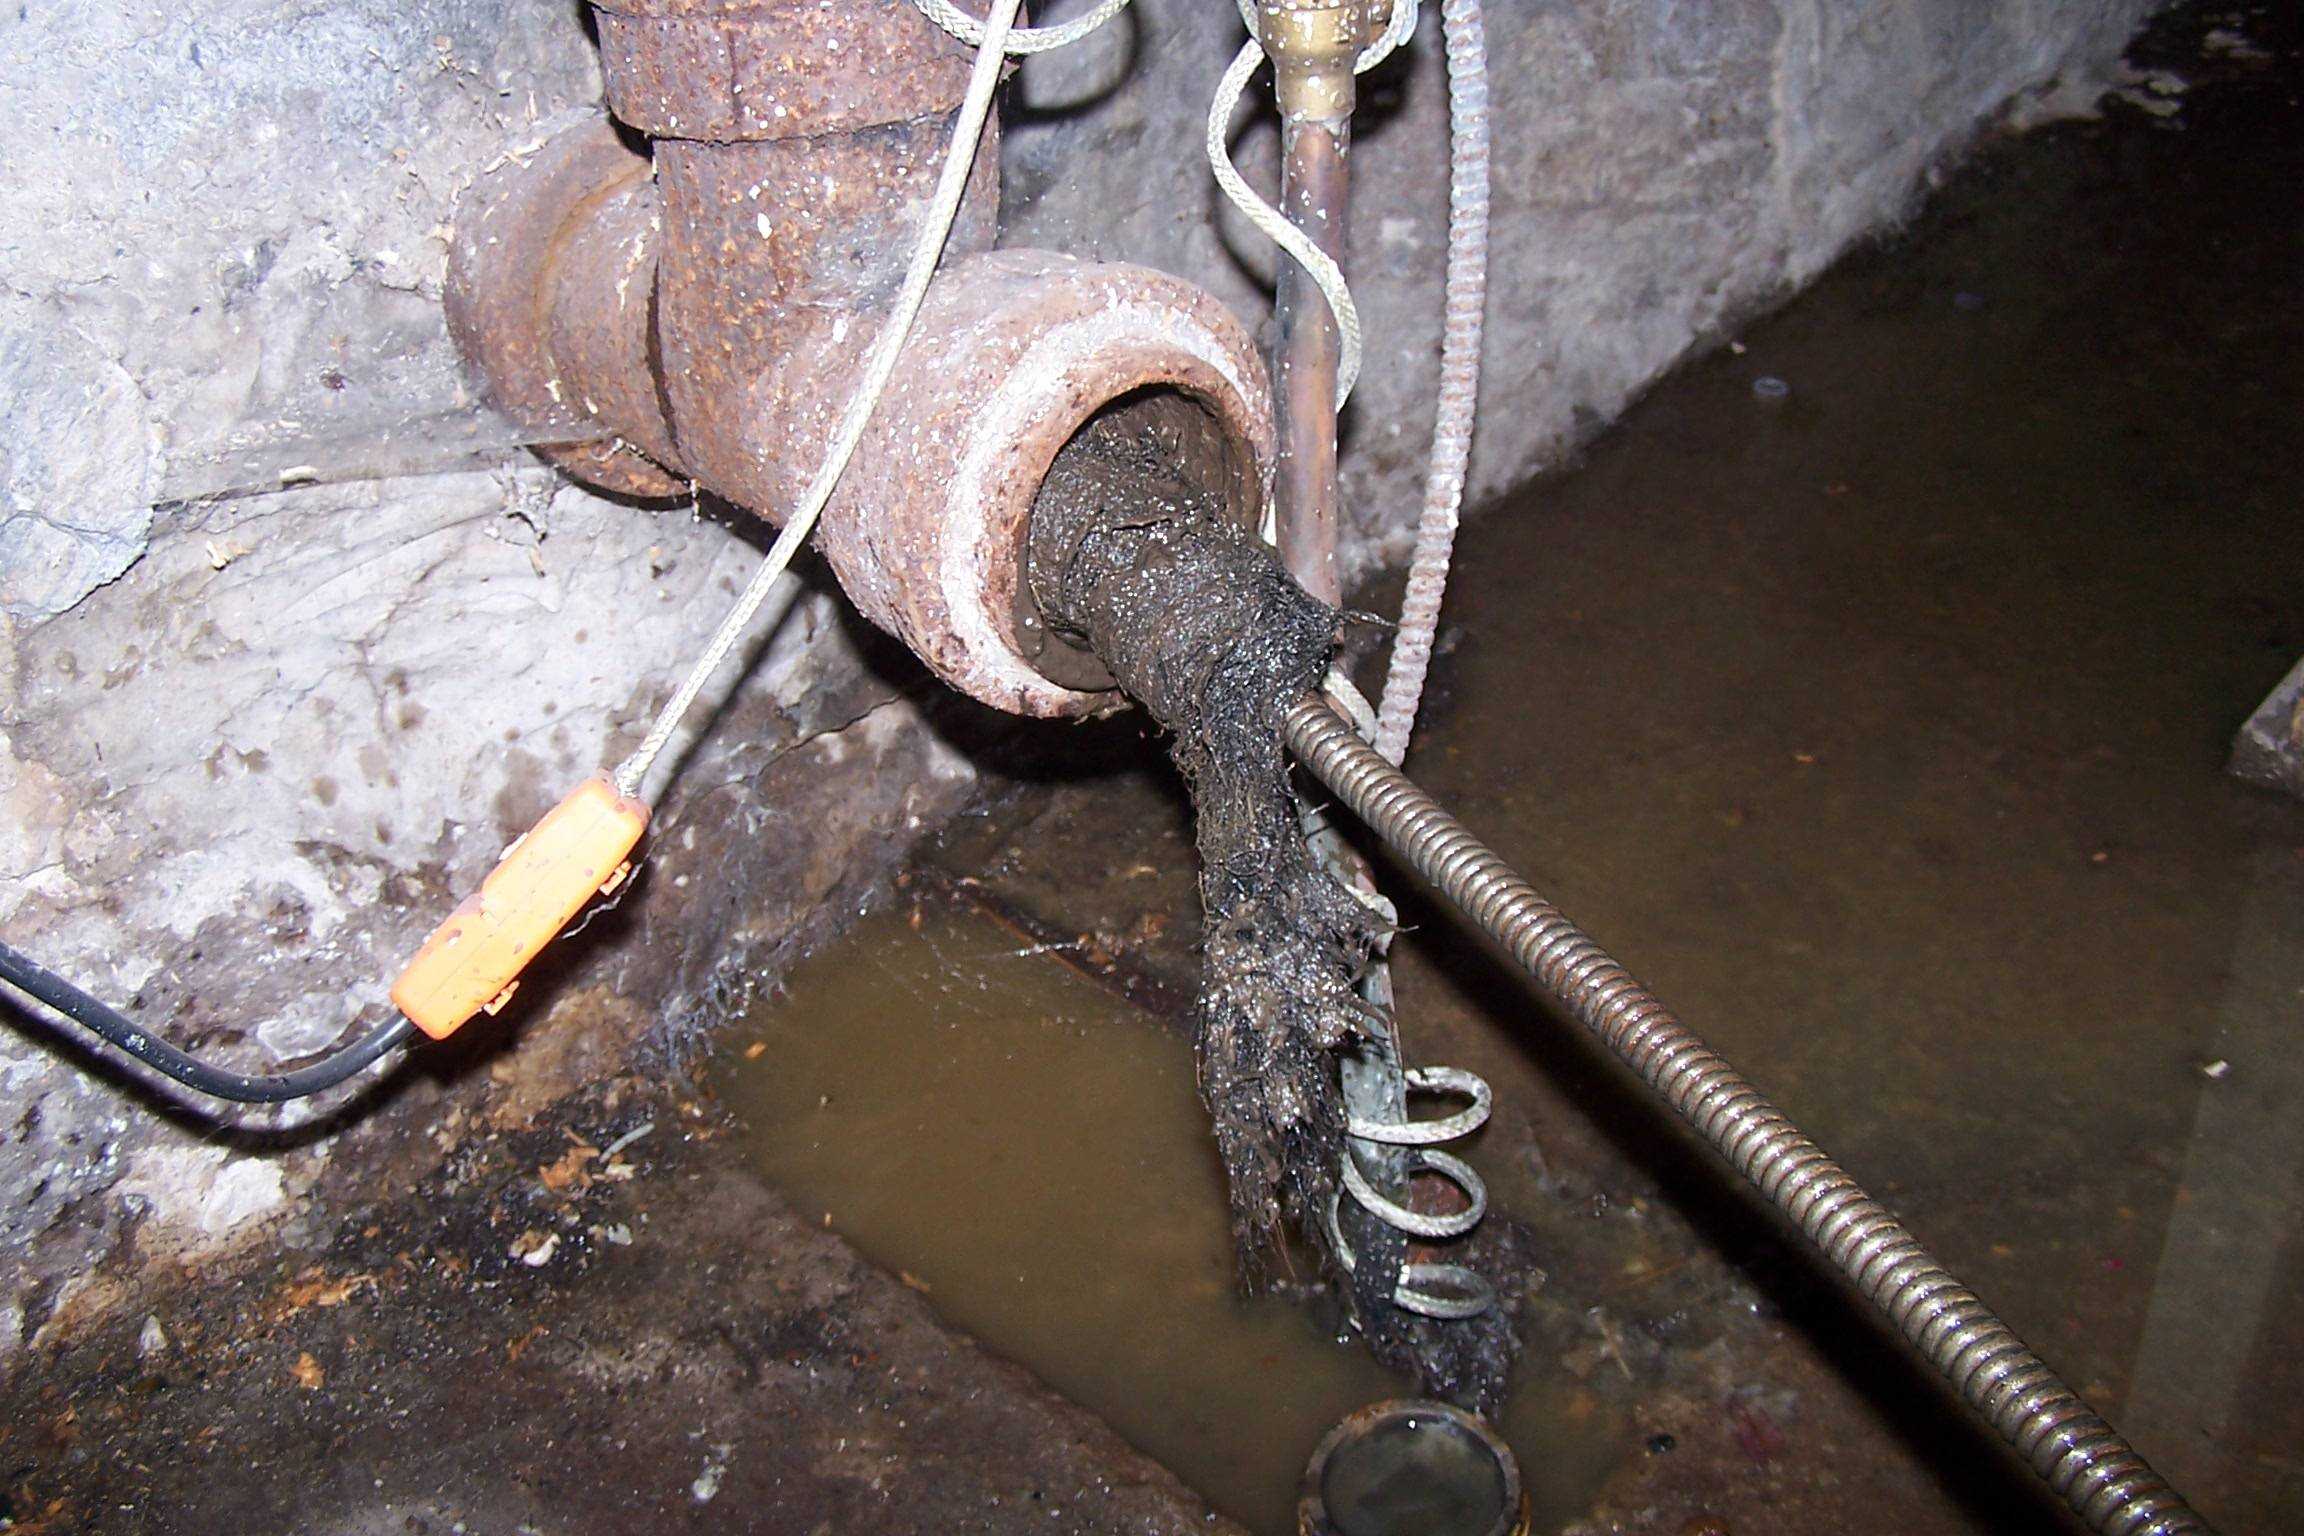 Воняет из раковины на кухне канализацией — что делать и как устранить?